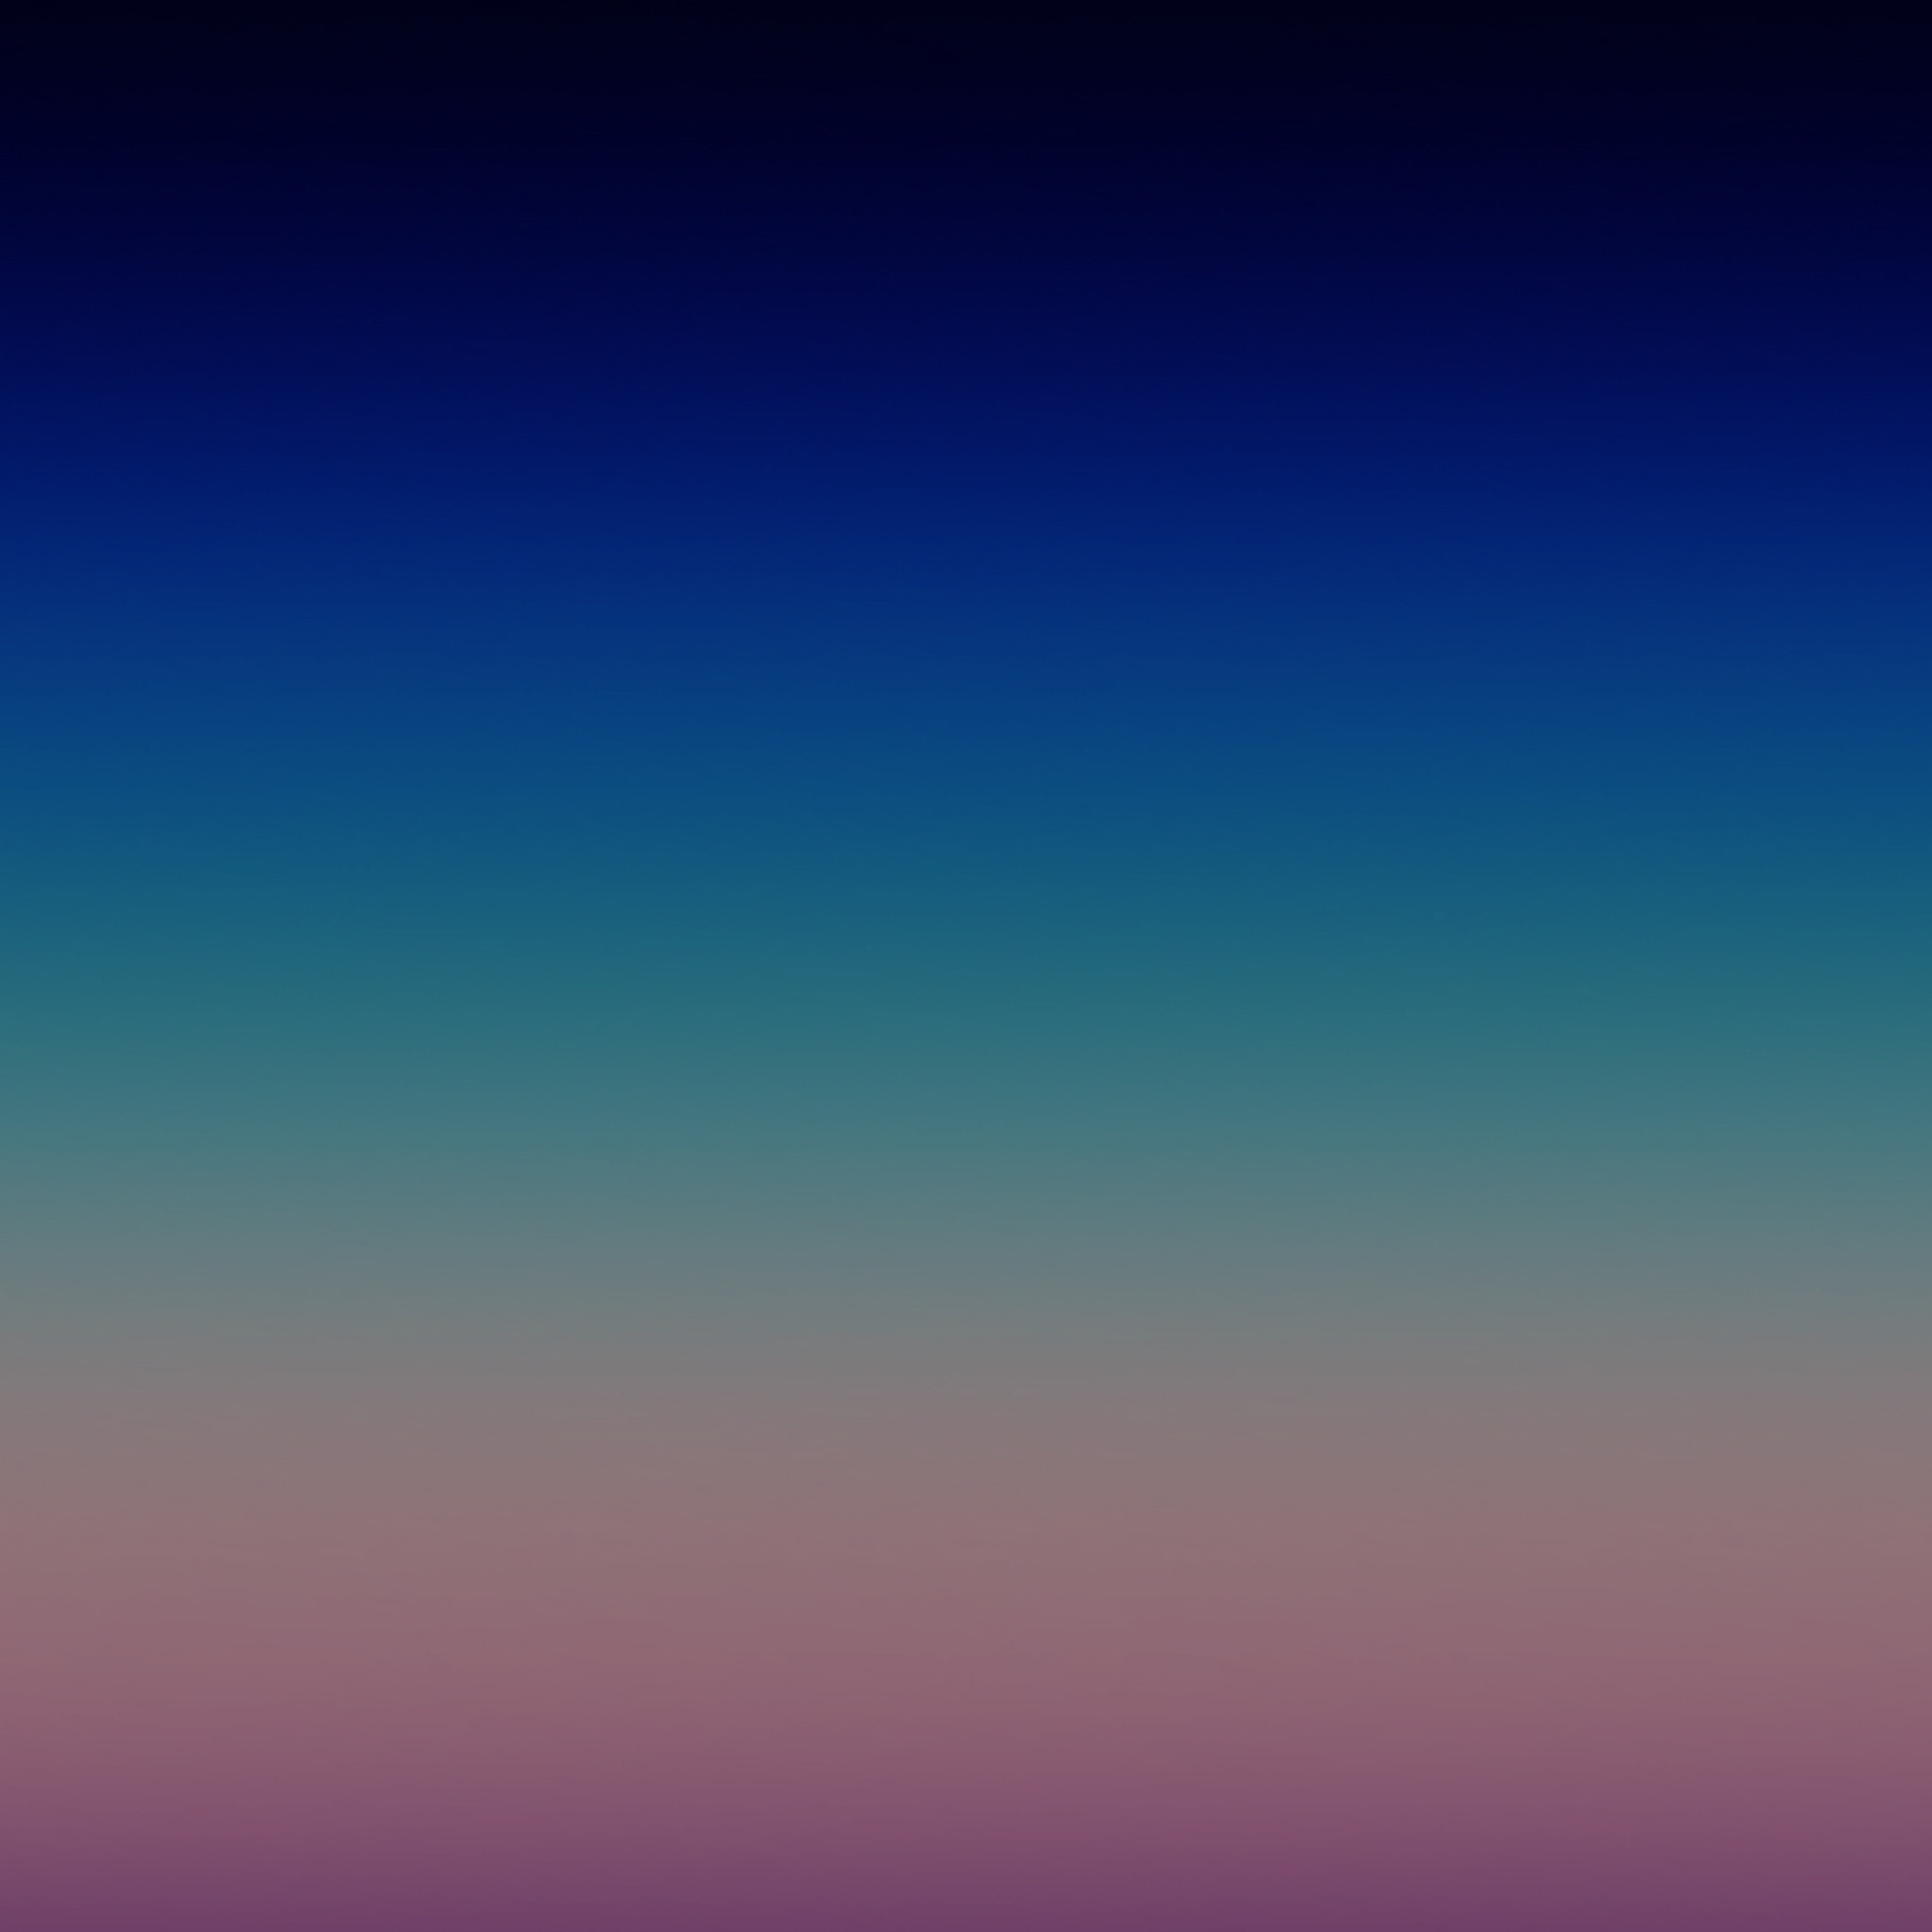 samsung galaxy a8 fondo de pantalla hd,azul,cielo,púrpura,tiempo de día,violeta